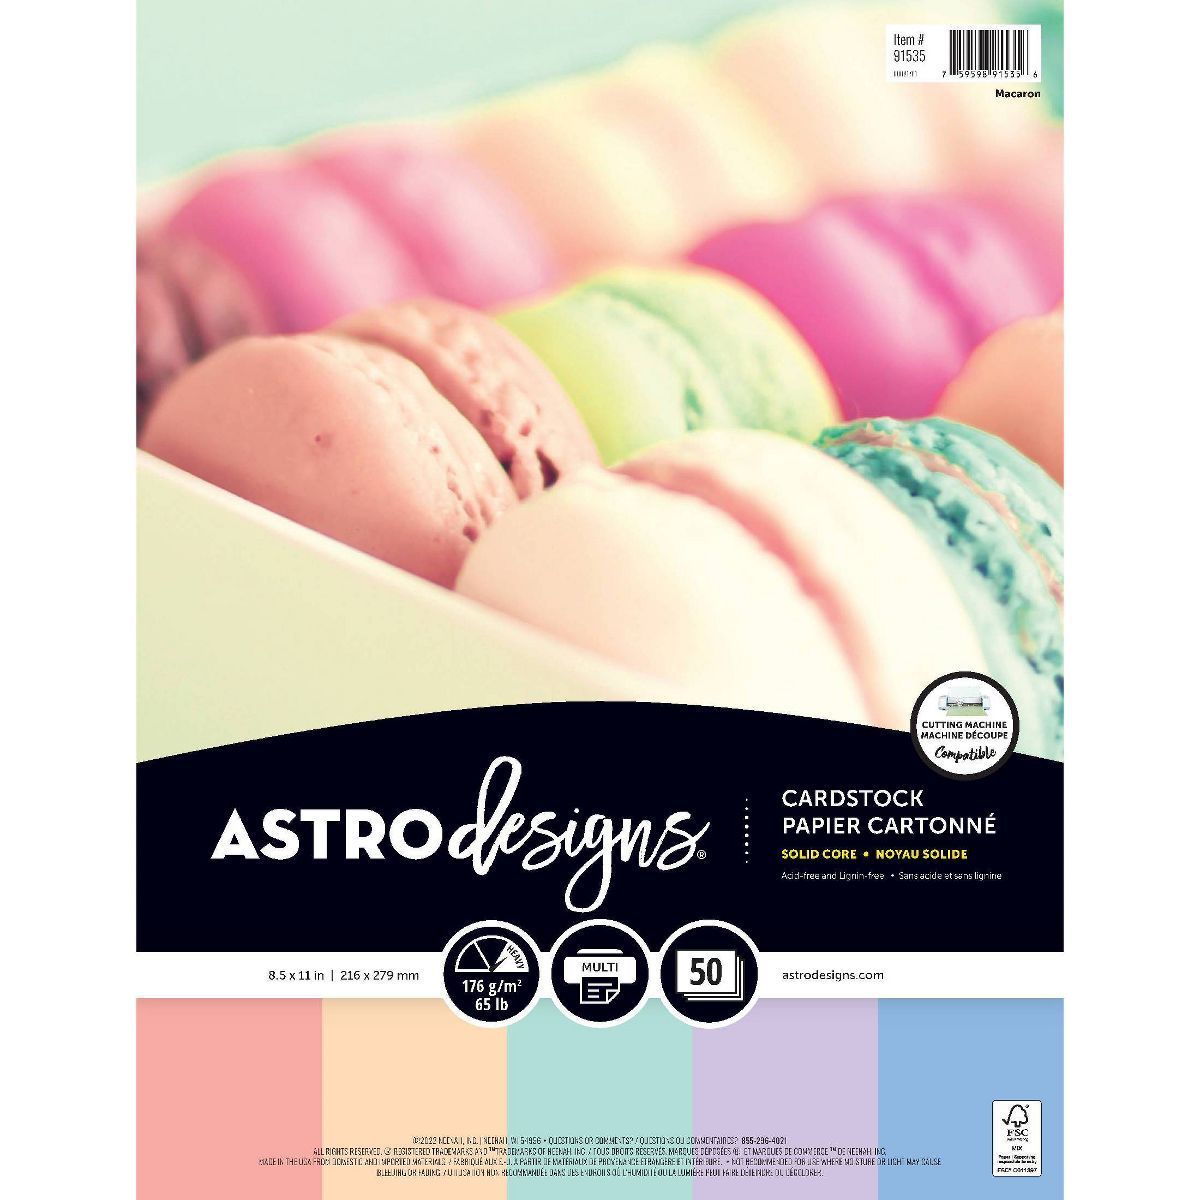 Astrodesigns Macaroon Cardstock Paper 50ct 8.5" x 11" | Target